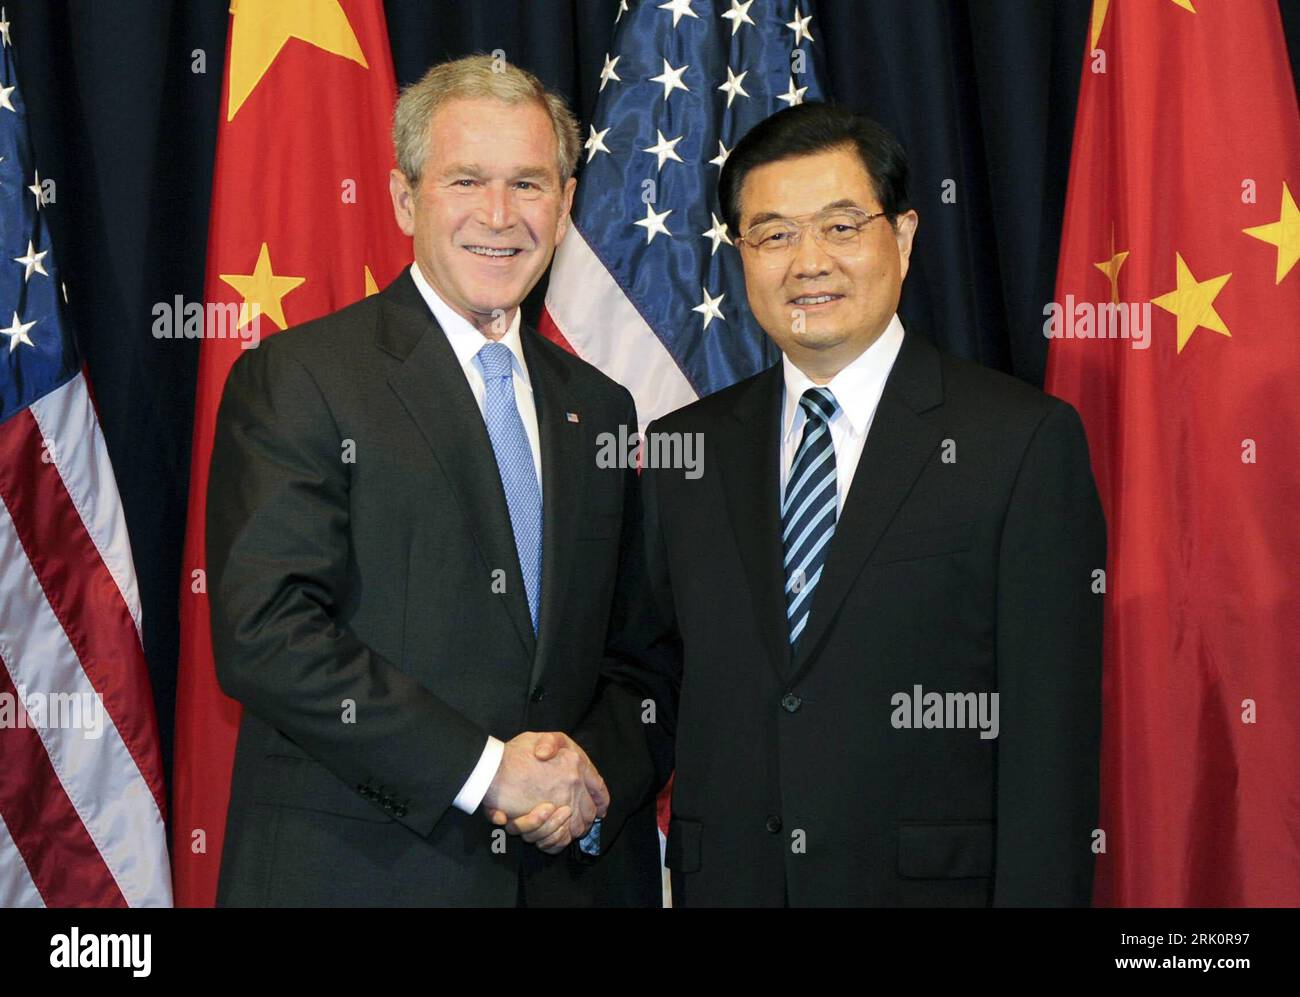 Präsident George W. Bush (li., USA) und Präsident Hu Jintao (China) während eines Treffens am Rande des Asiatisch-Pazifischen Wirtschaftsforums (APEC) in Lima - PUBLICATIONxNOTxINxCHN Stock Photo